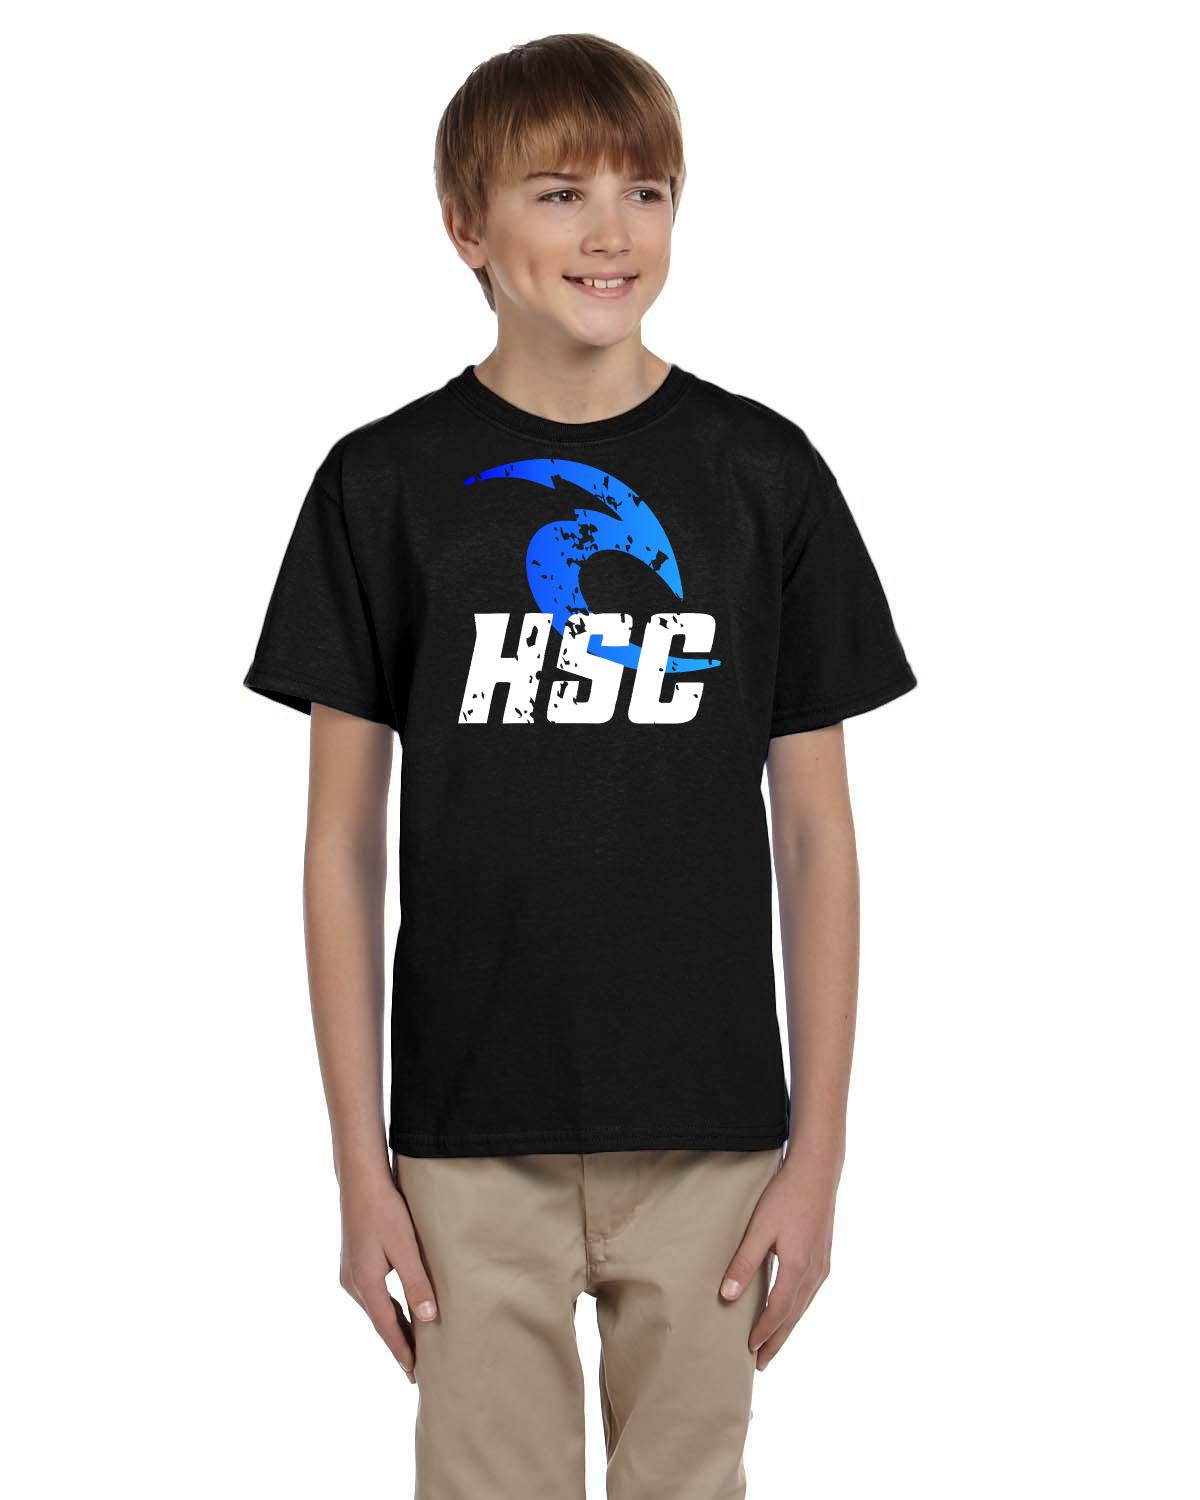 HSC Hanover Swim Club Cheering Squad Youth Tshirt